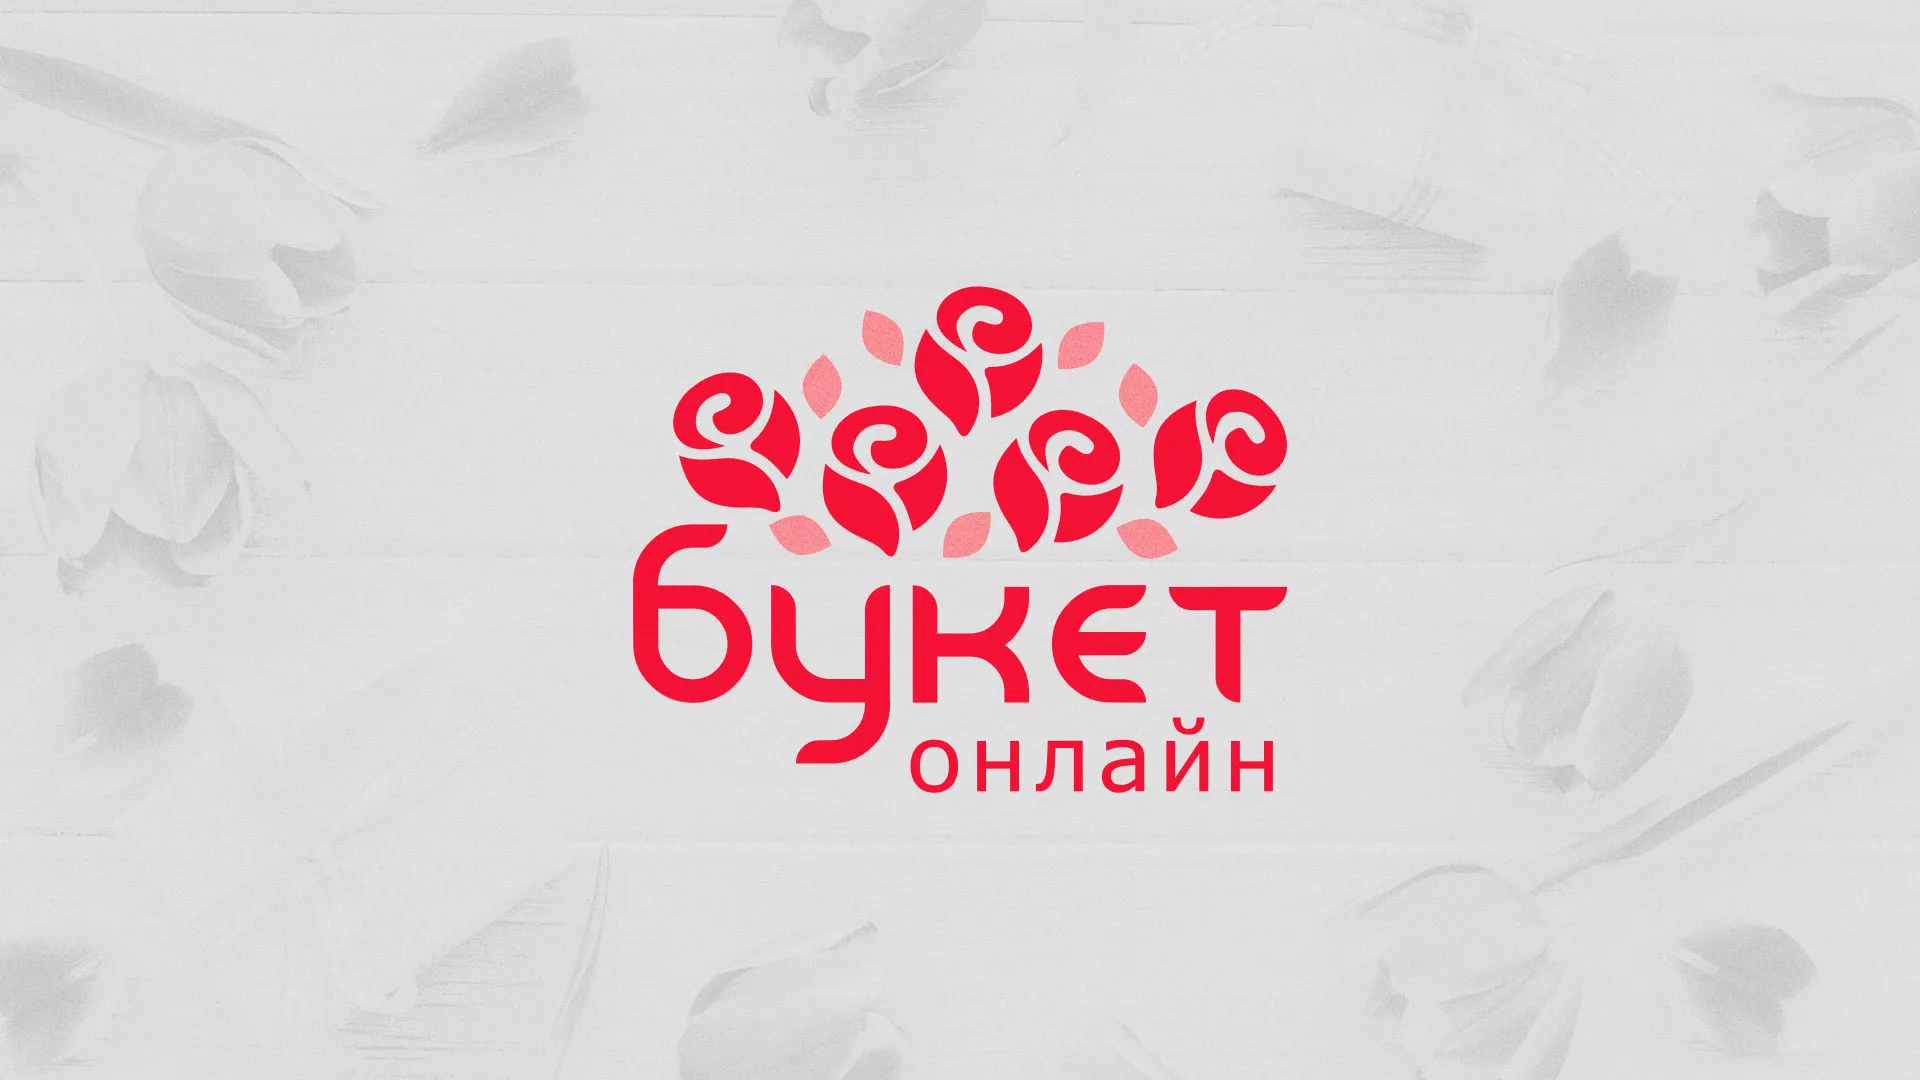 Создание интернет-магазина «Букет-онлайн» по цветам в Чкаловском